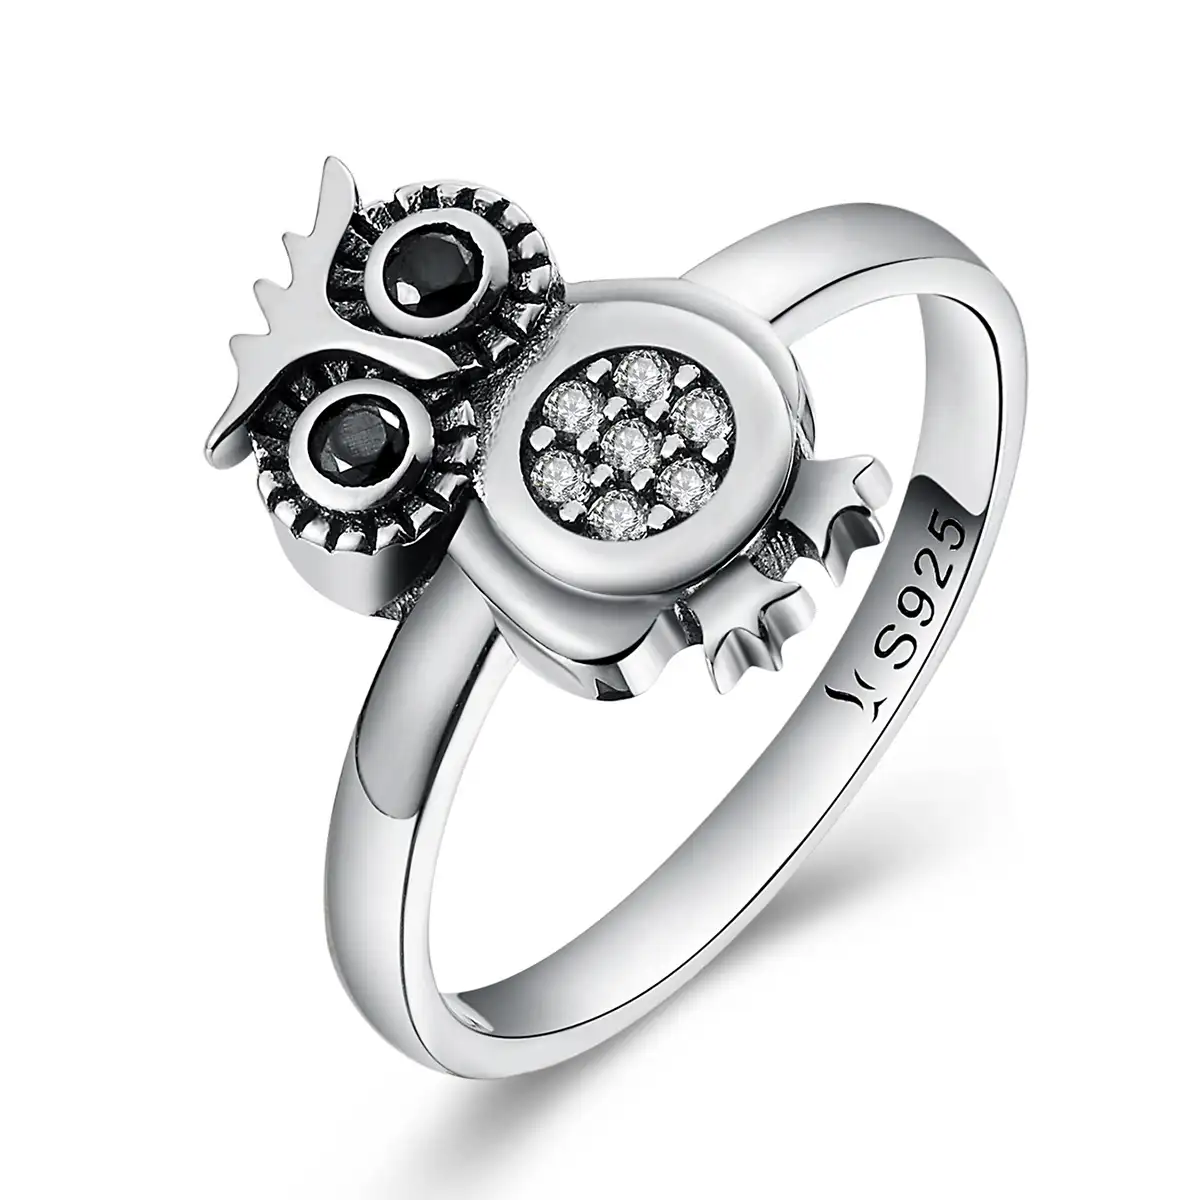 Bagreer SCR077 Мода 925 Серебряные кольца CZ в ретро-стиле с милой совой с отделкой кристаллами S925 из настоящего серебра и кубического циркония, кольцо на палец для женщин, ювелирные изделия